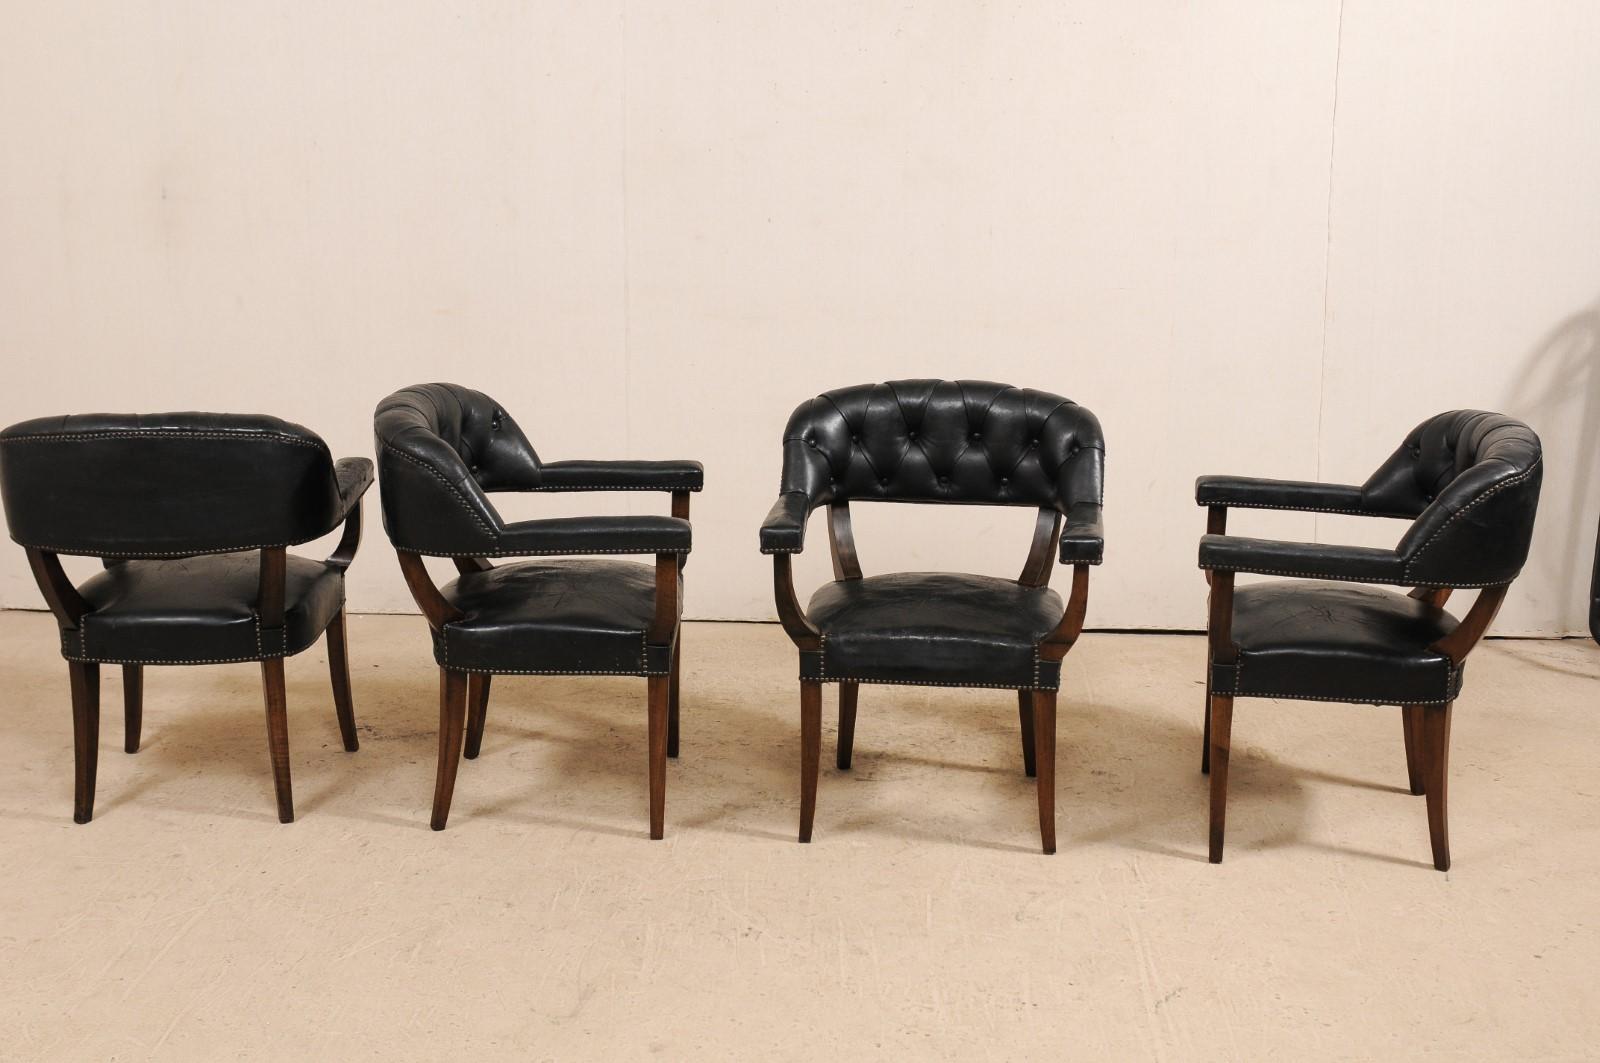 Ein hübsches Set von vier französischen Sesseln aus schwarzem Leder mit abgerundeten Wannenlehnen aus der Mitte des 20. Jahrhunderts. Dieses Set von Vintage-Stühlen aus Frankreich hat jeweils eine getuftete Lederrückenlehne, gerade Armlehnen und